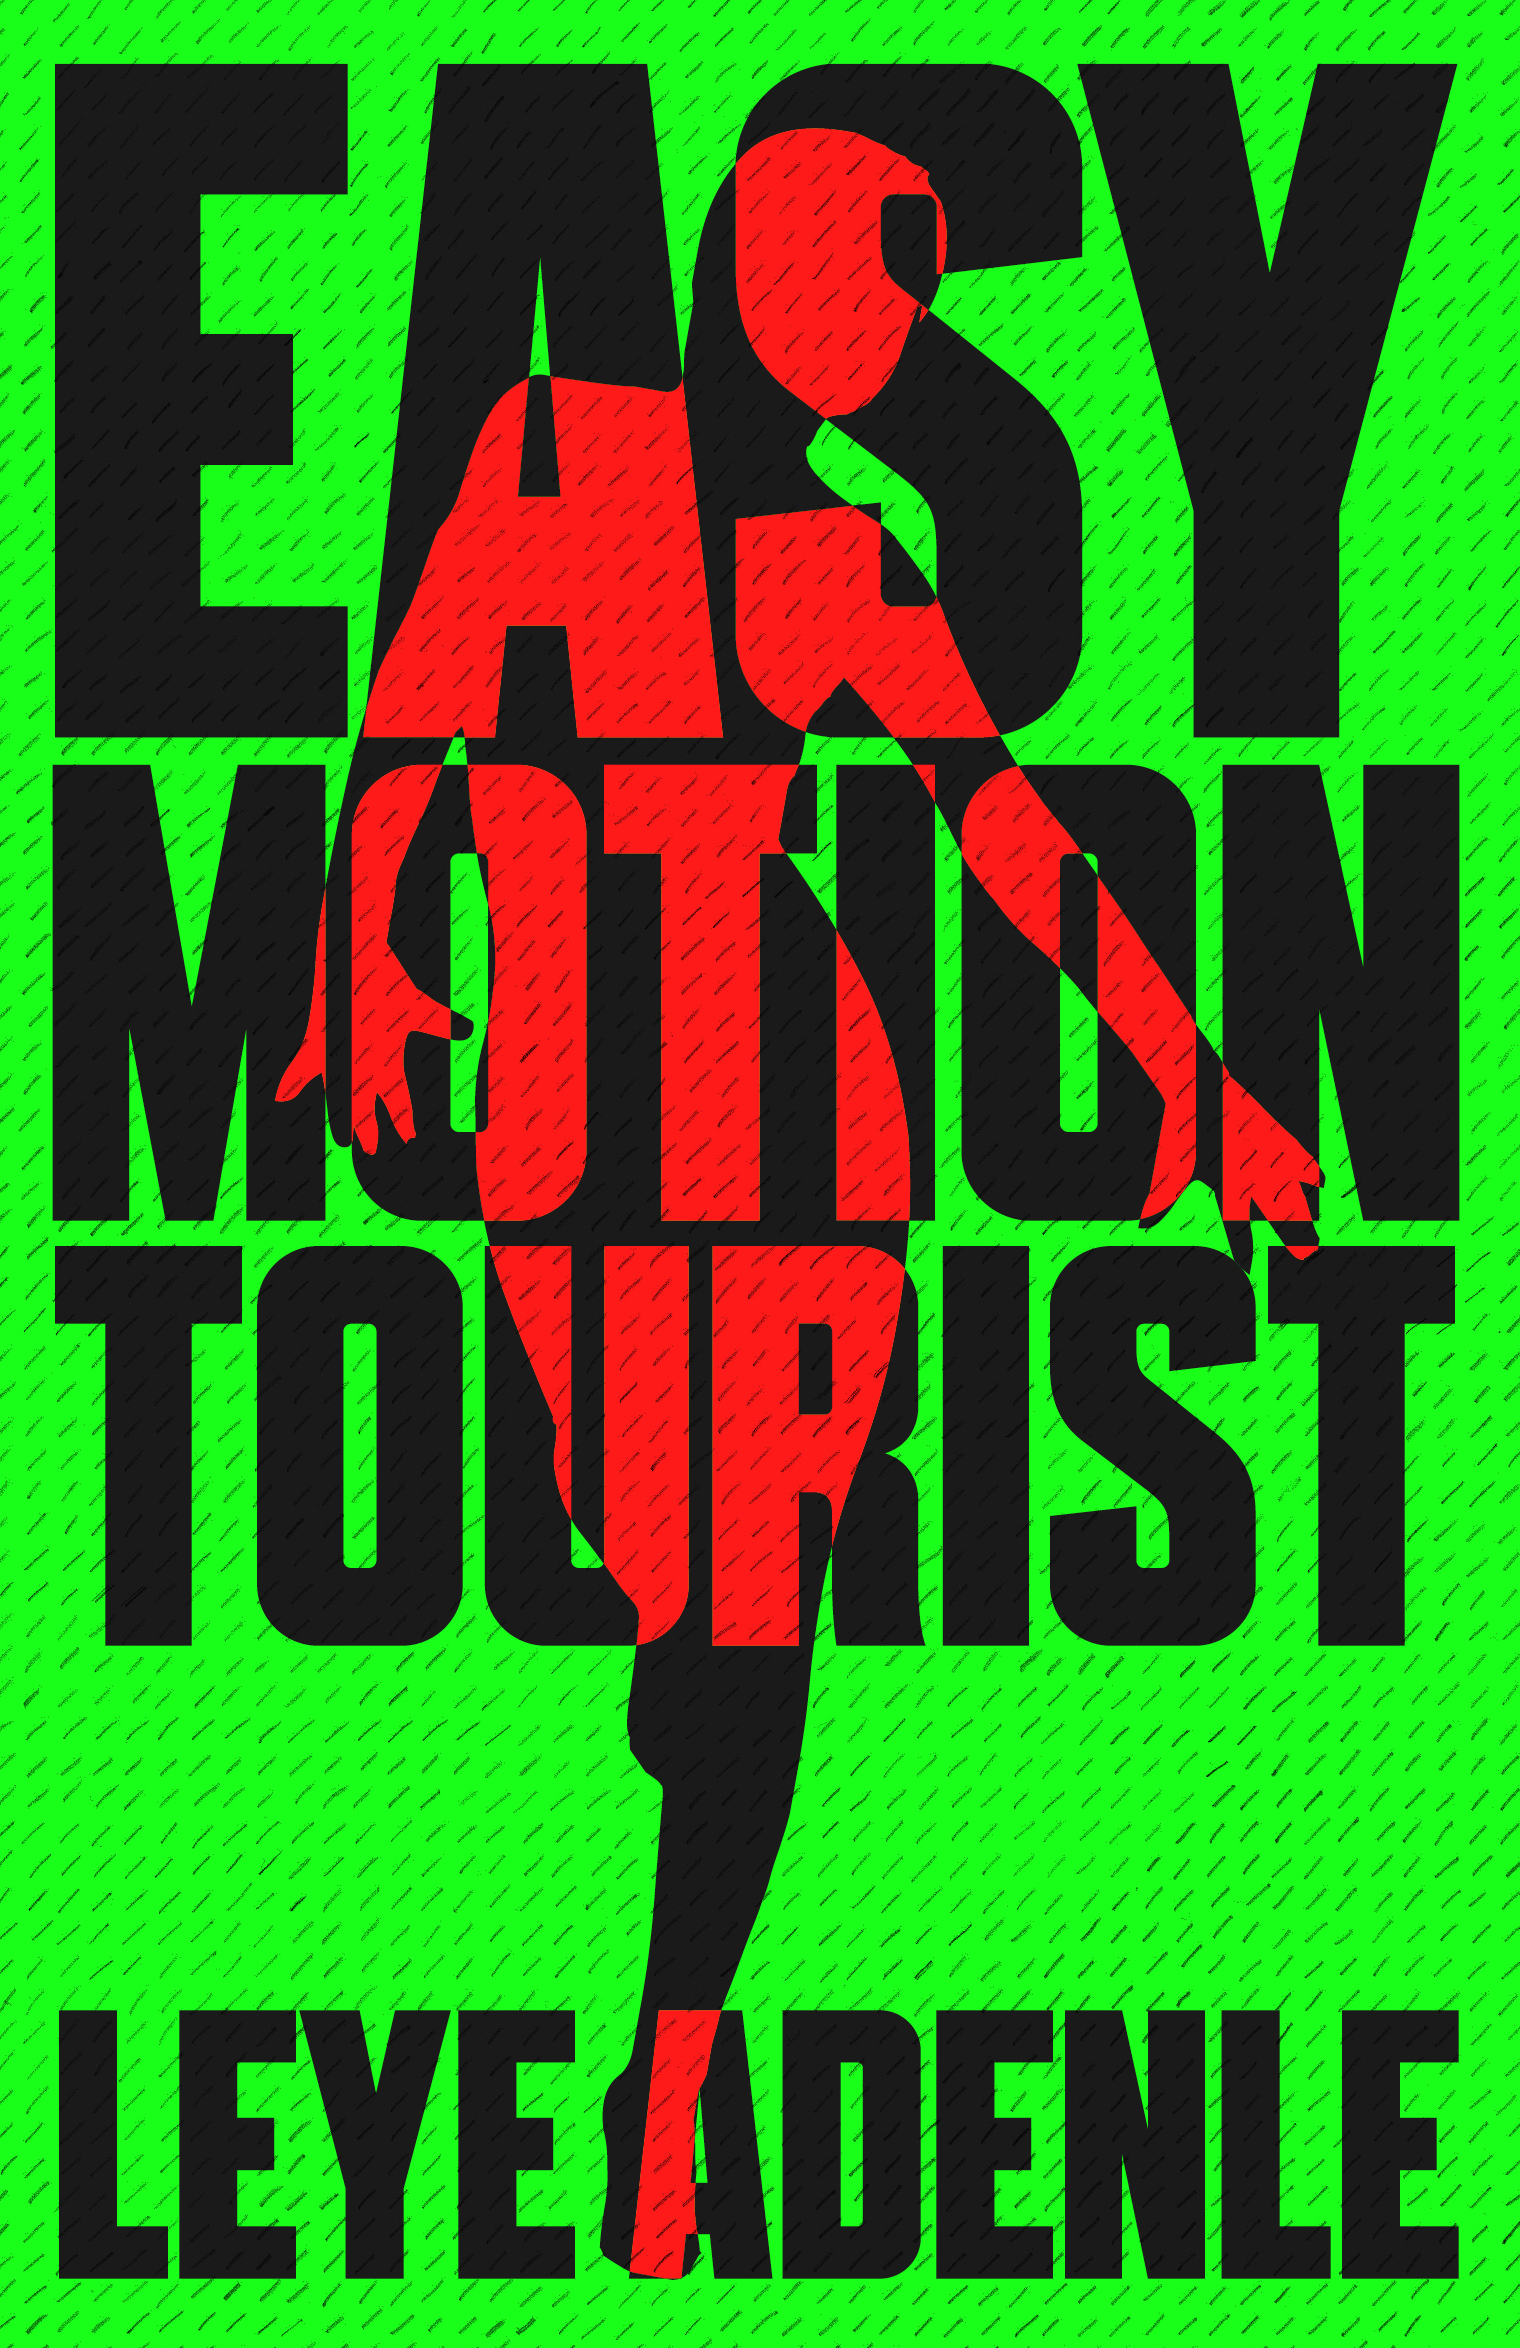 Easy Motion Tourist.jpg